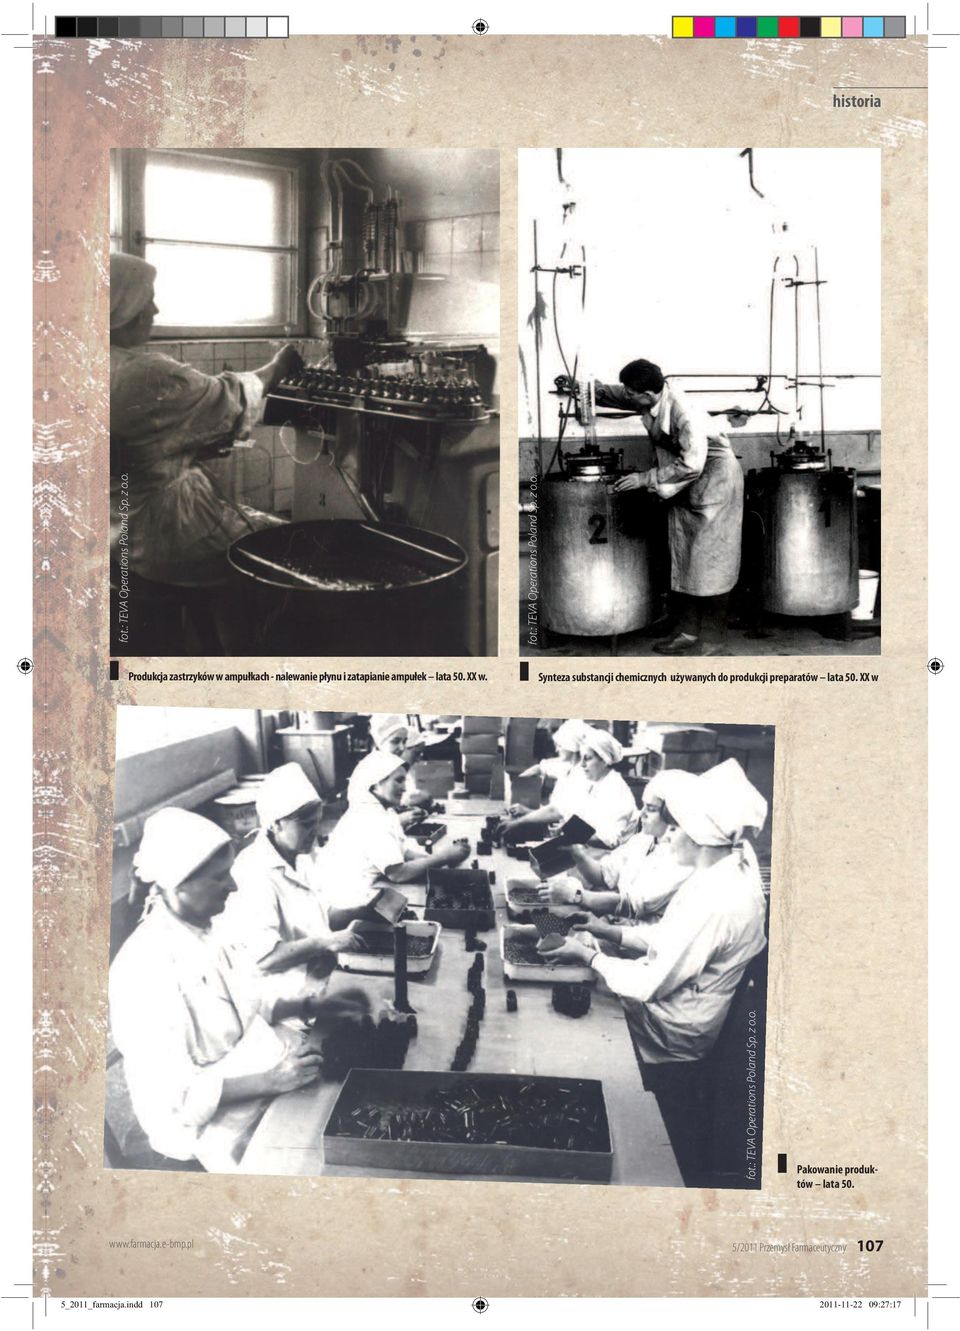 Synteza substancji chemicznych używanych do produkcji preparatów lata 50.